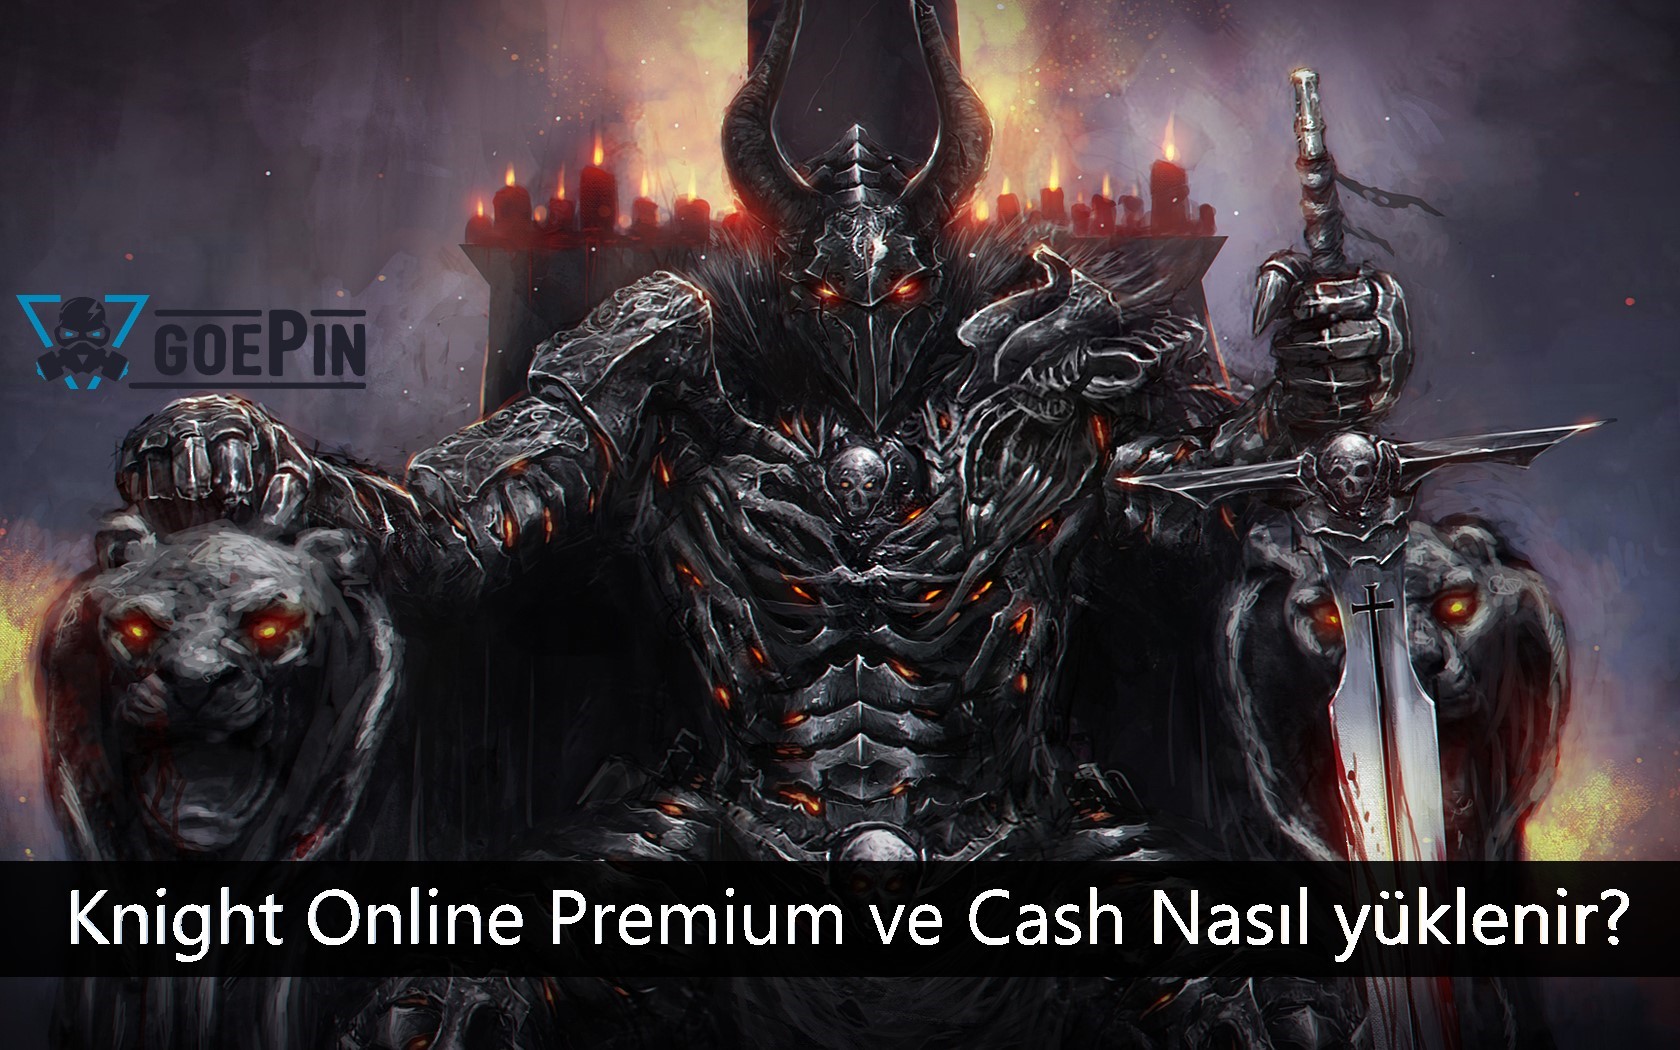 Knight Online Premium ve Cash Nasıl yüklenir?